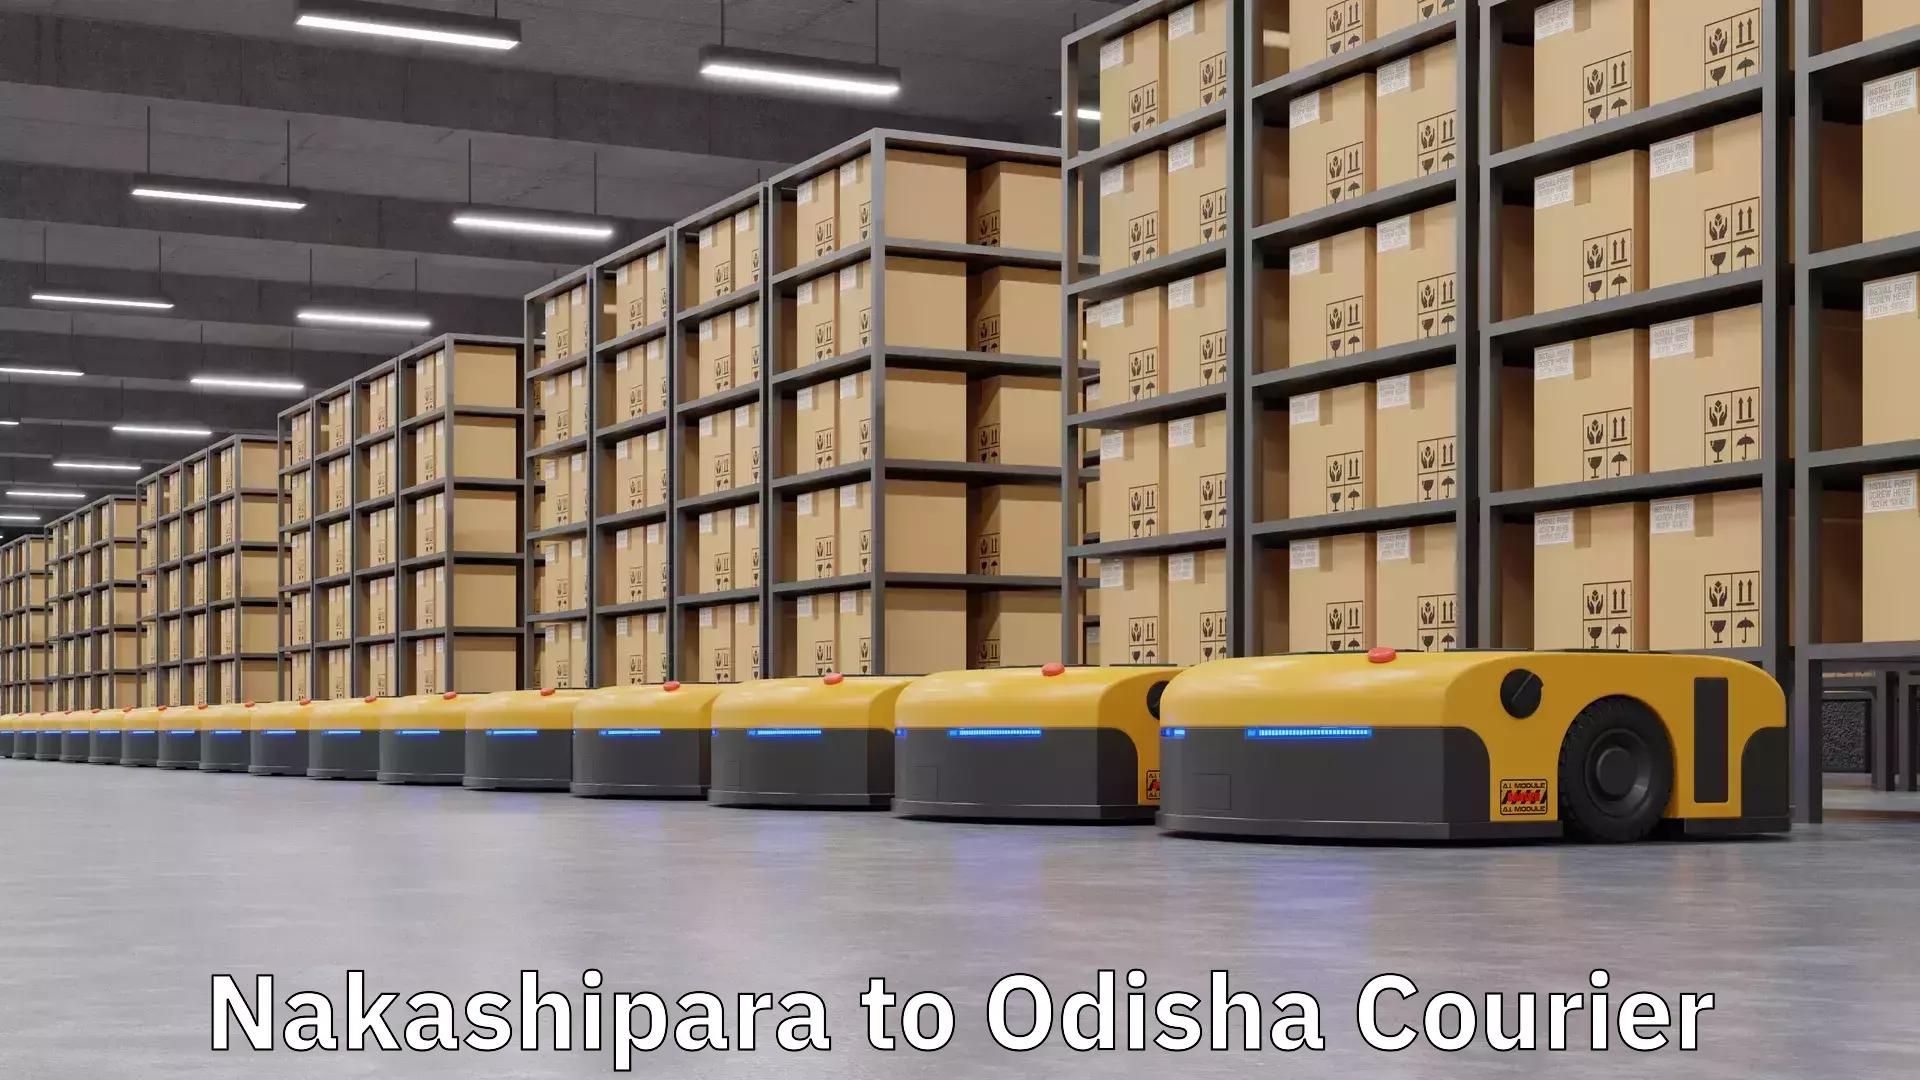 Courier rate comparison Nakashipara to Kendrapara